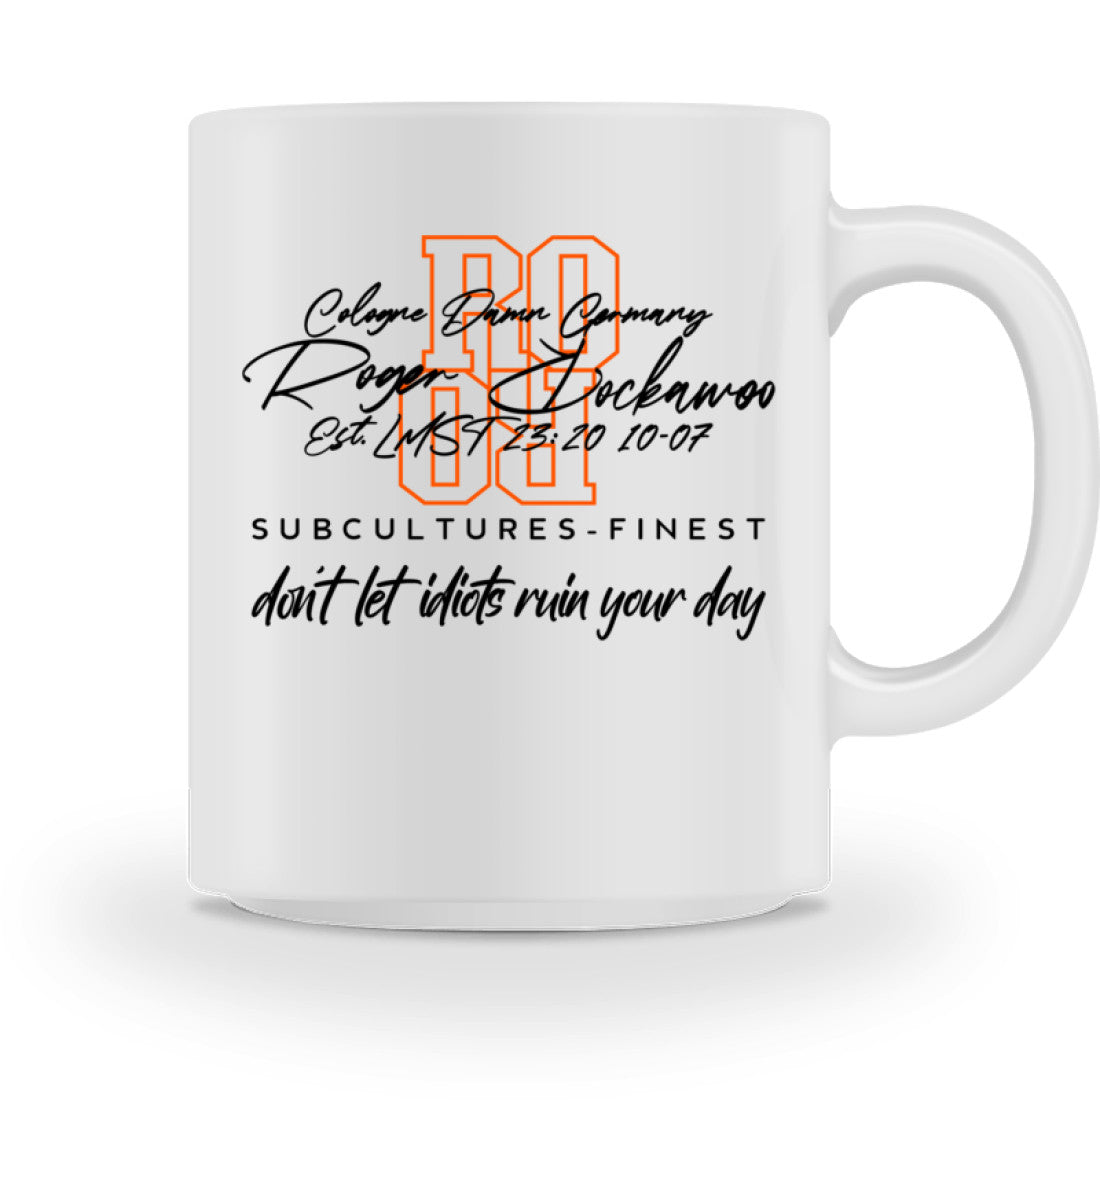 Tasse aus Keramik bedruckt mit dem Design der dont let idiots ruin your day Edition im Roger Rockawoo Clothing Webshop Farbe Weiss